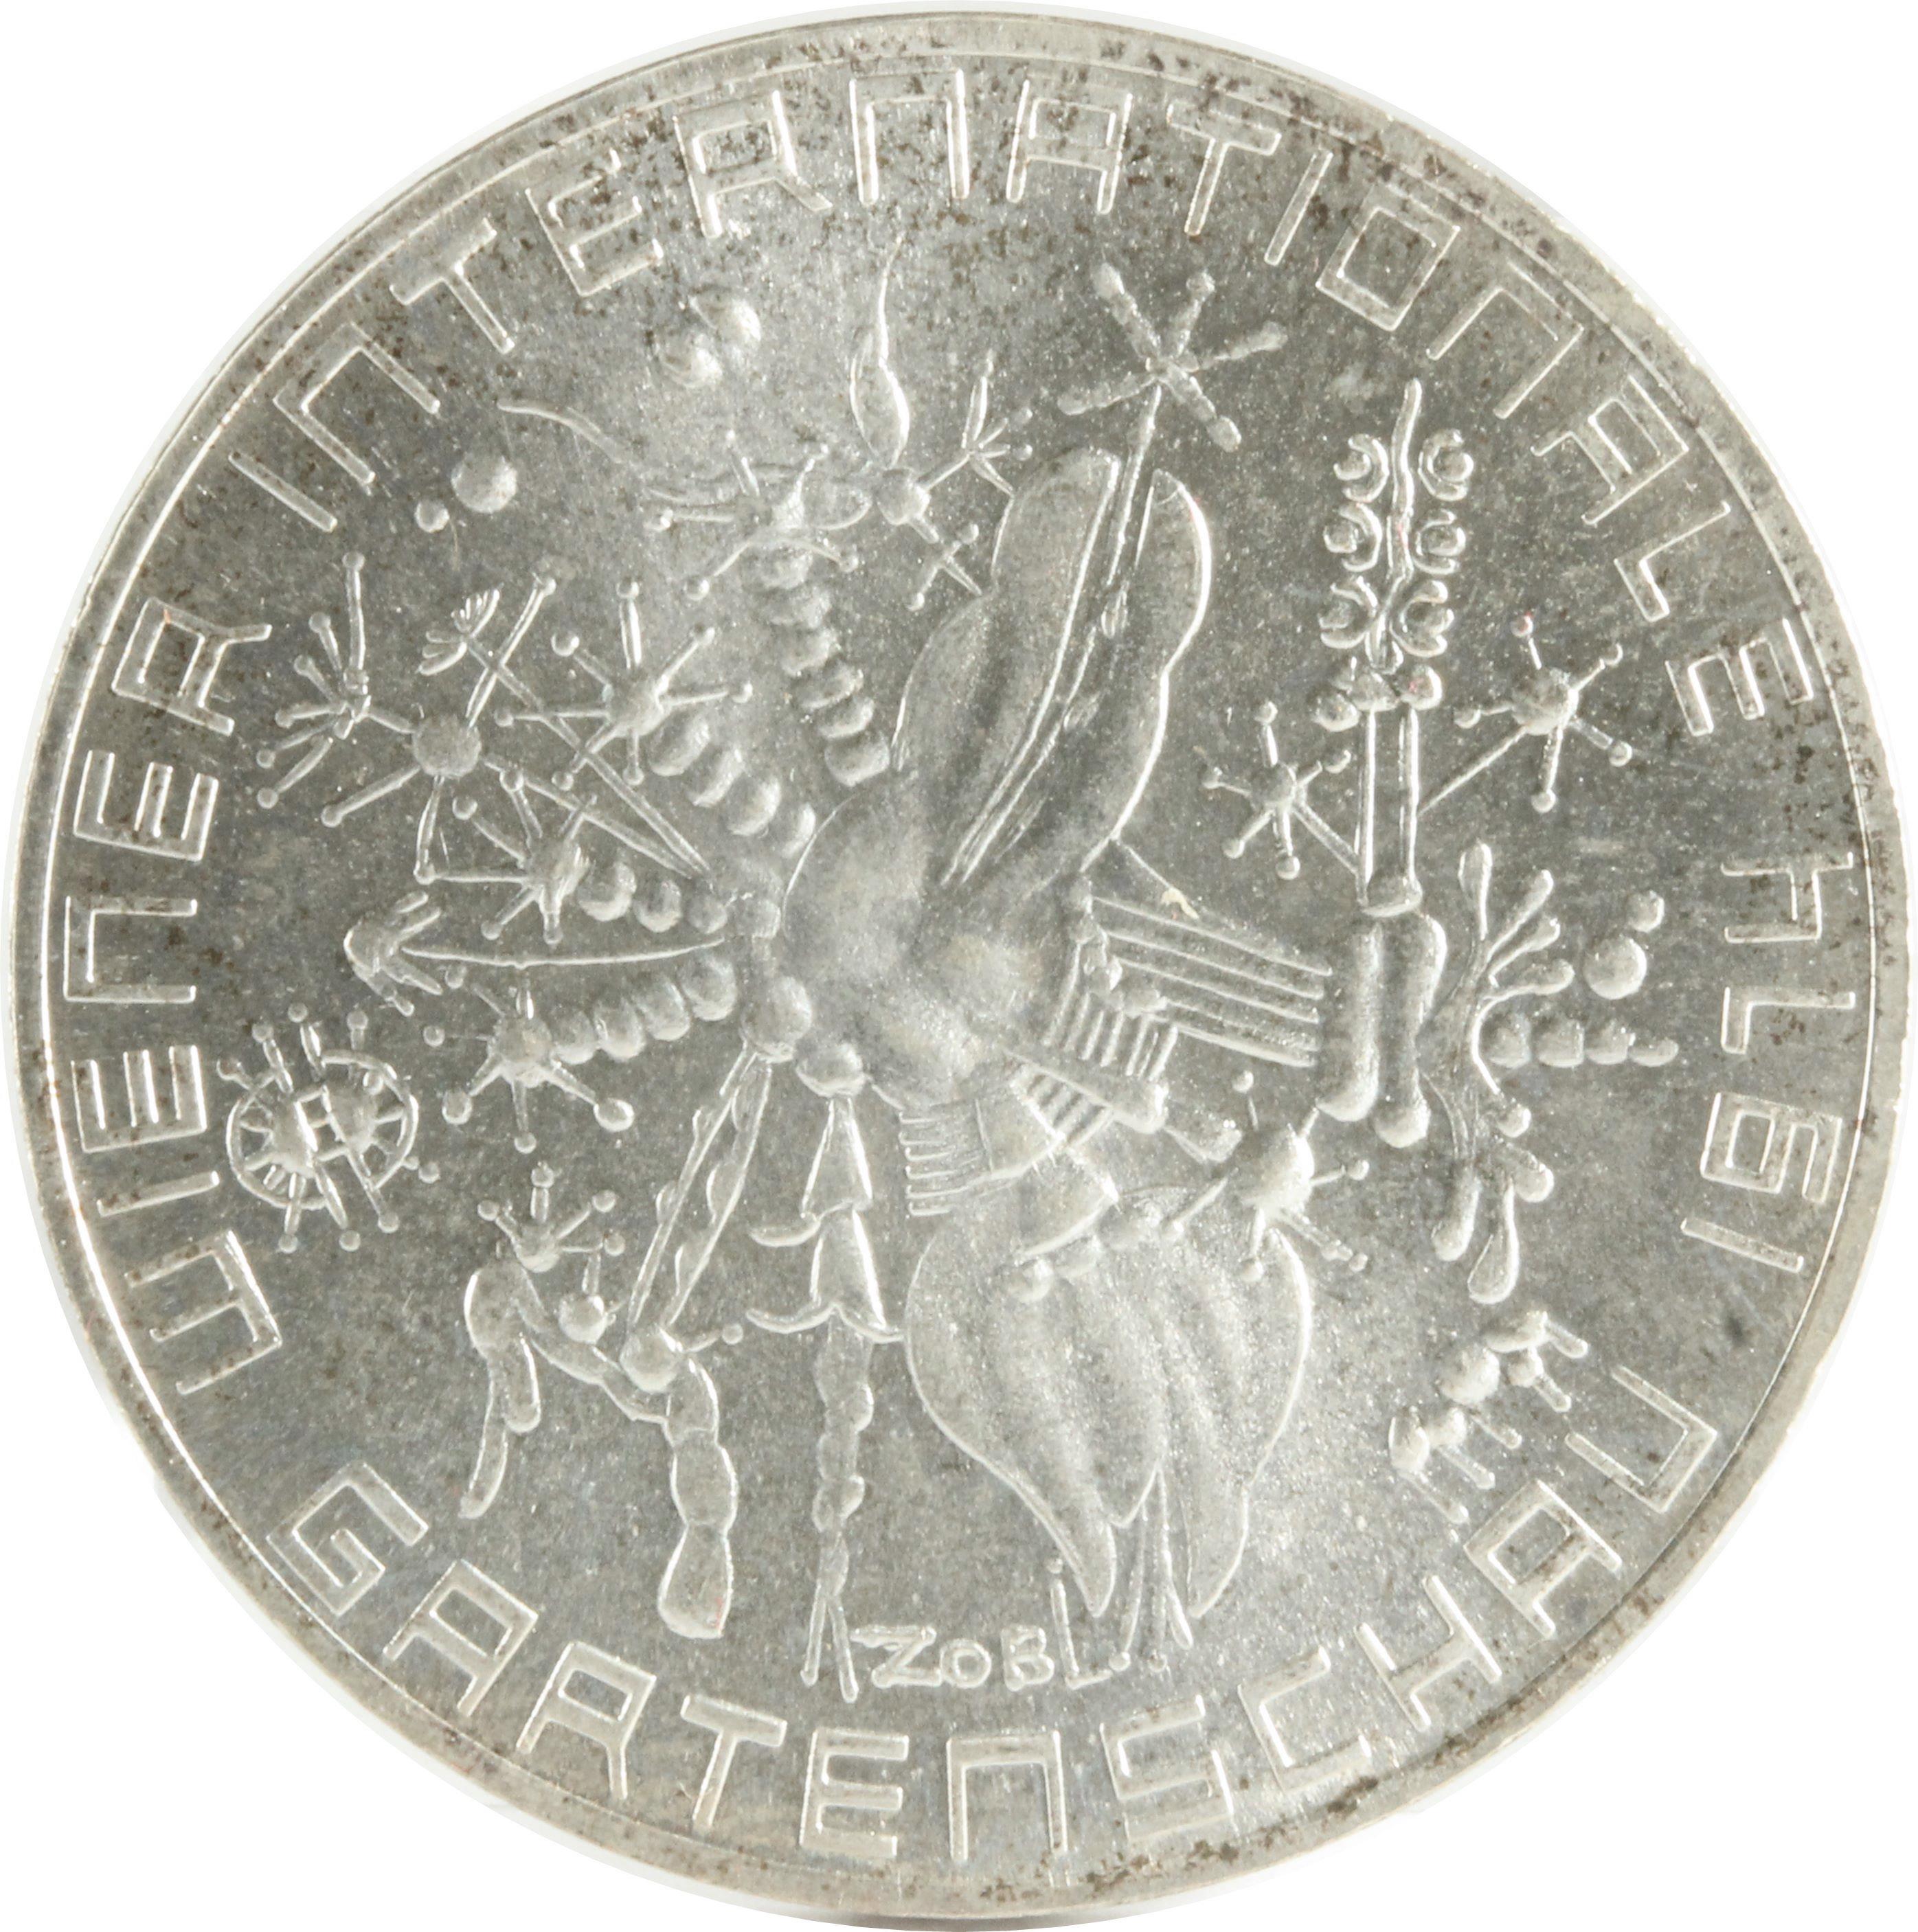 オーストリア 50シリング 銀貨 SCHILLING 1974年 XF | ミスターコインズ